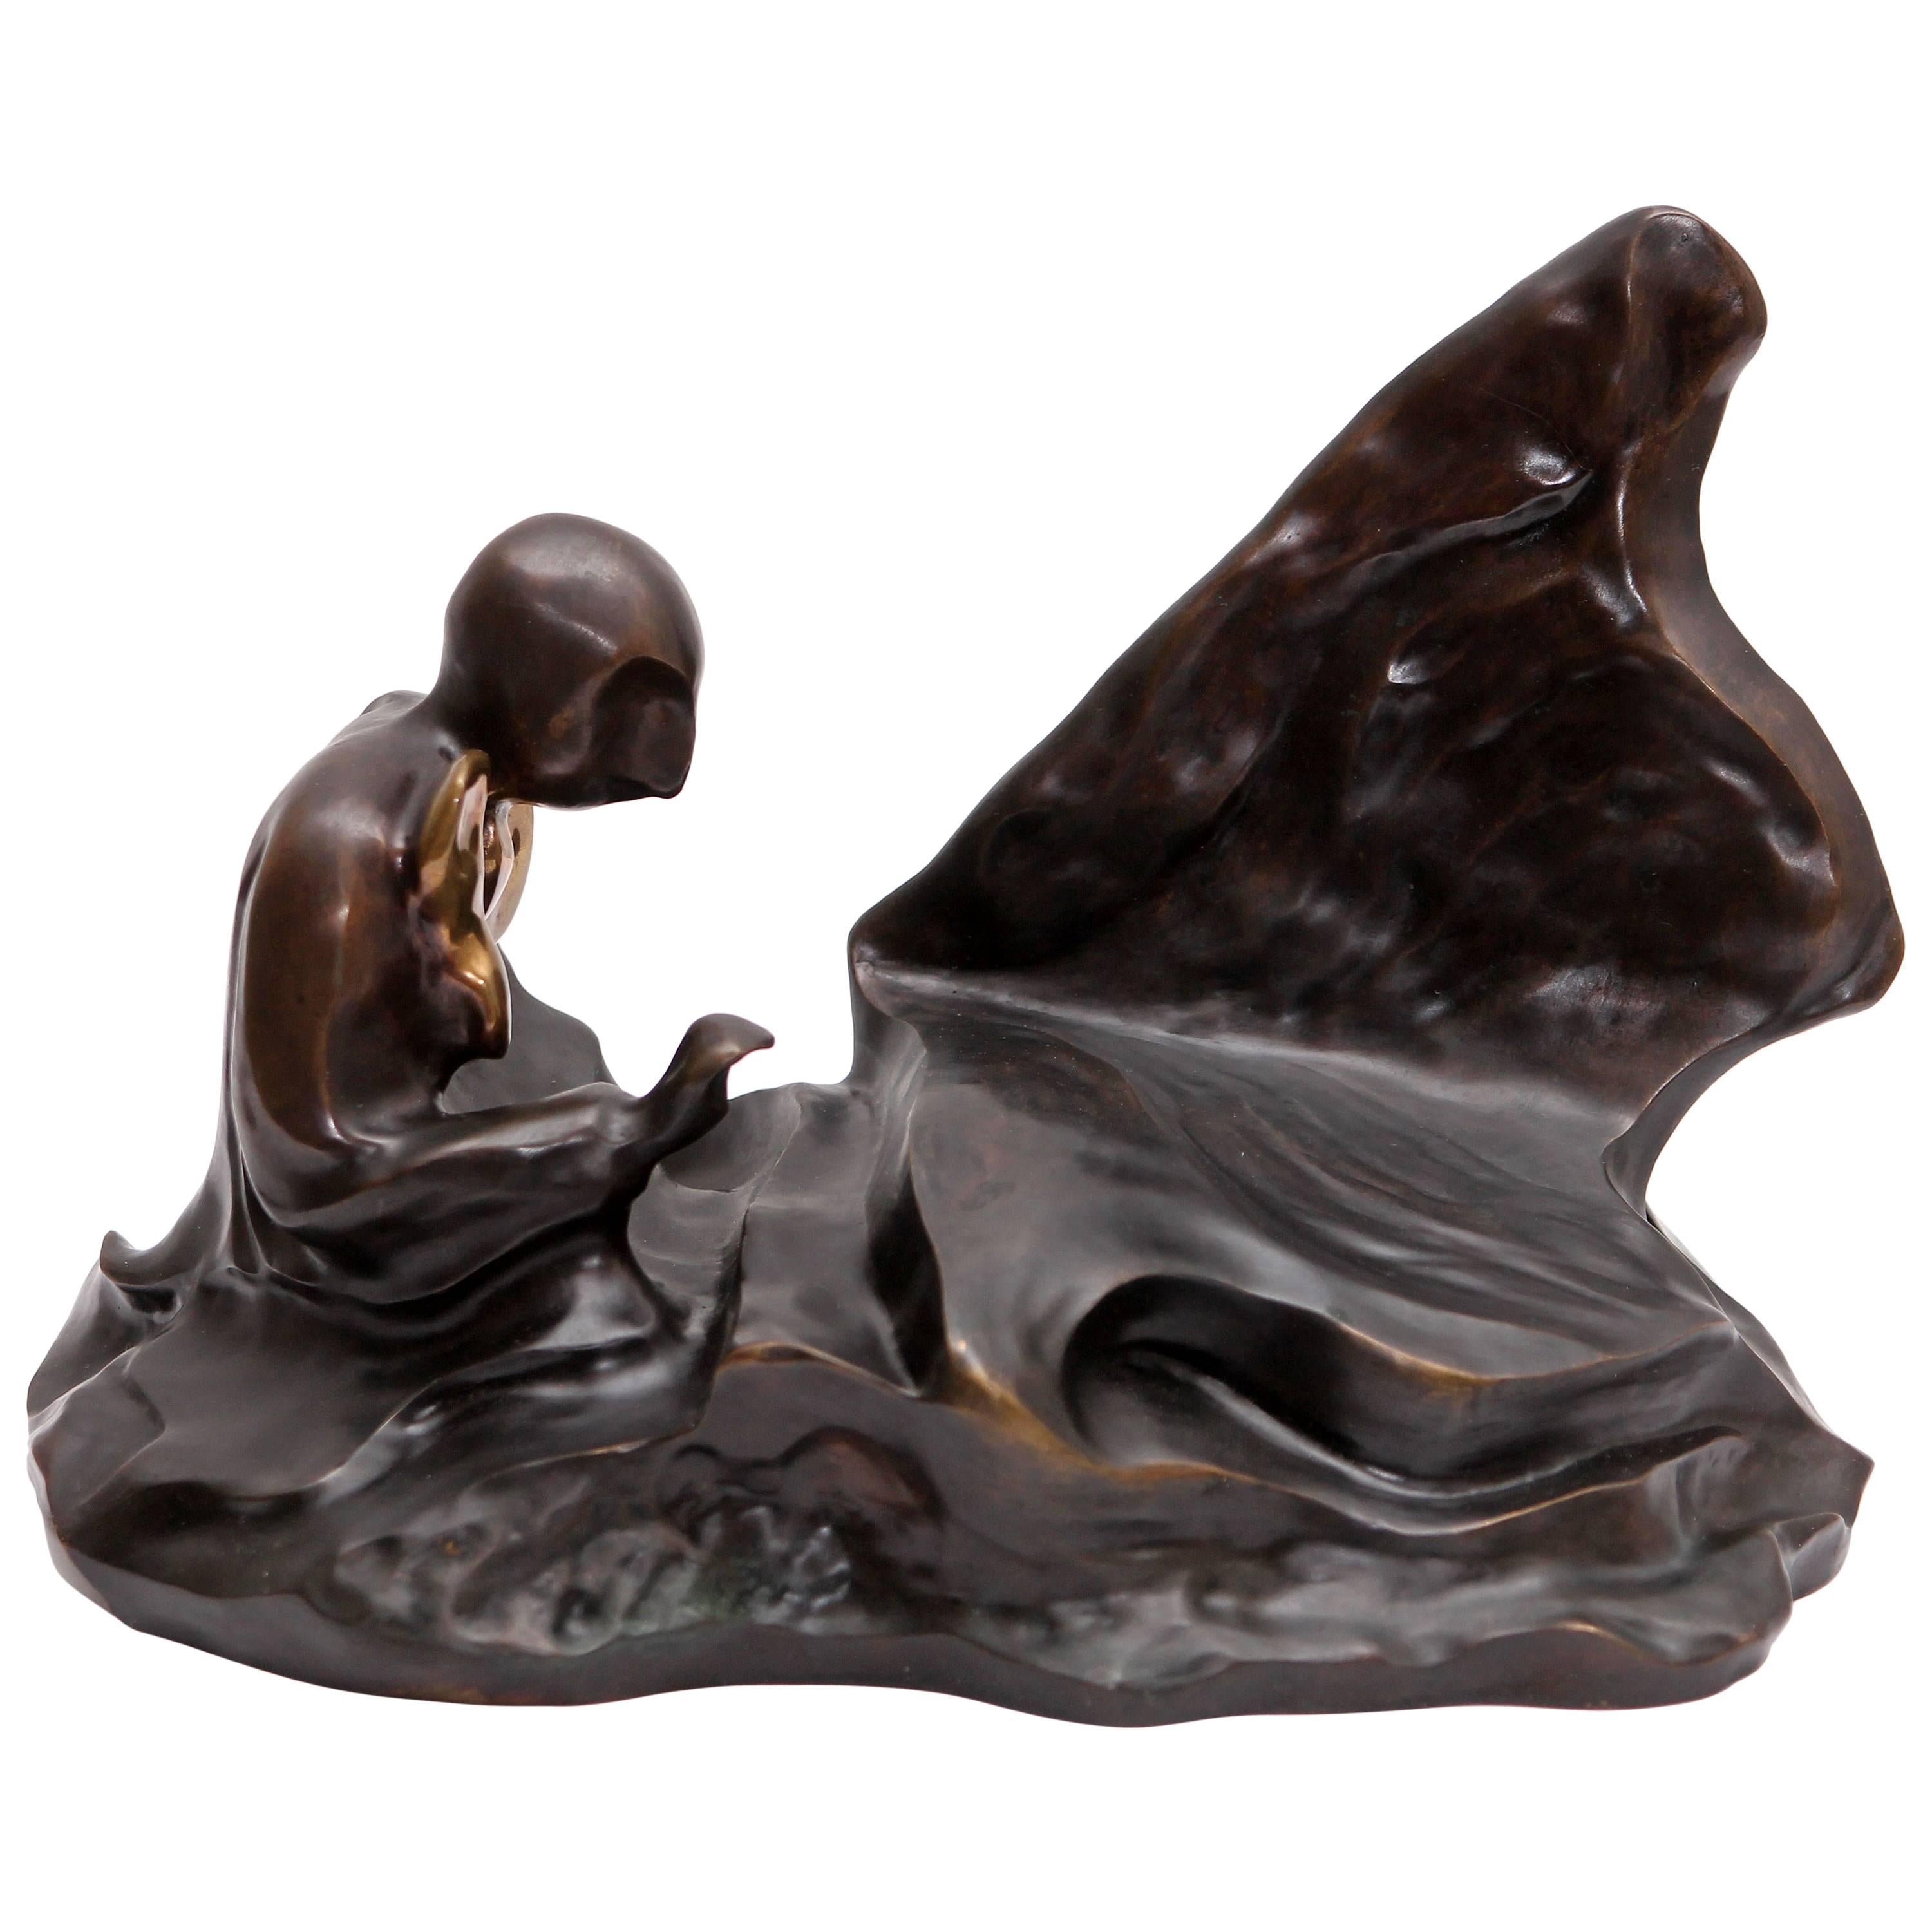  Bronze Sculpture "Pianist